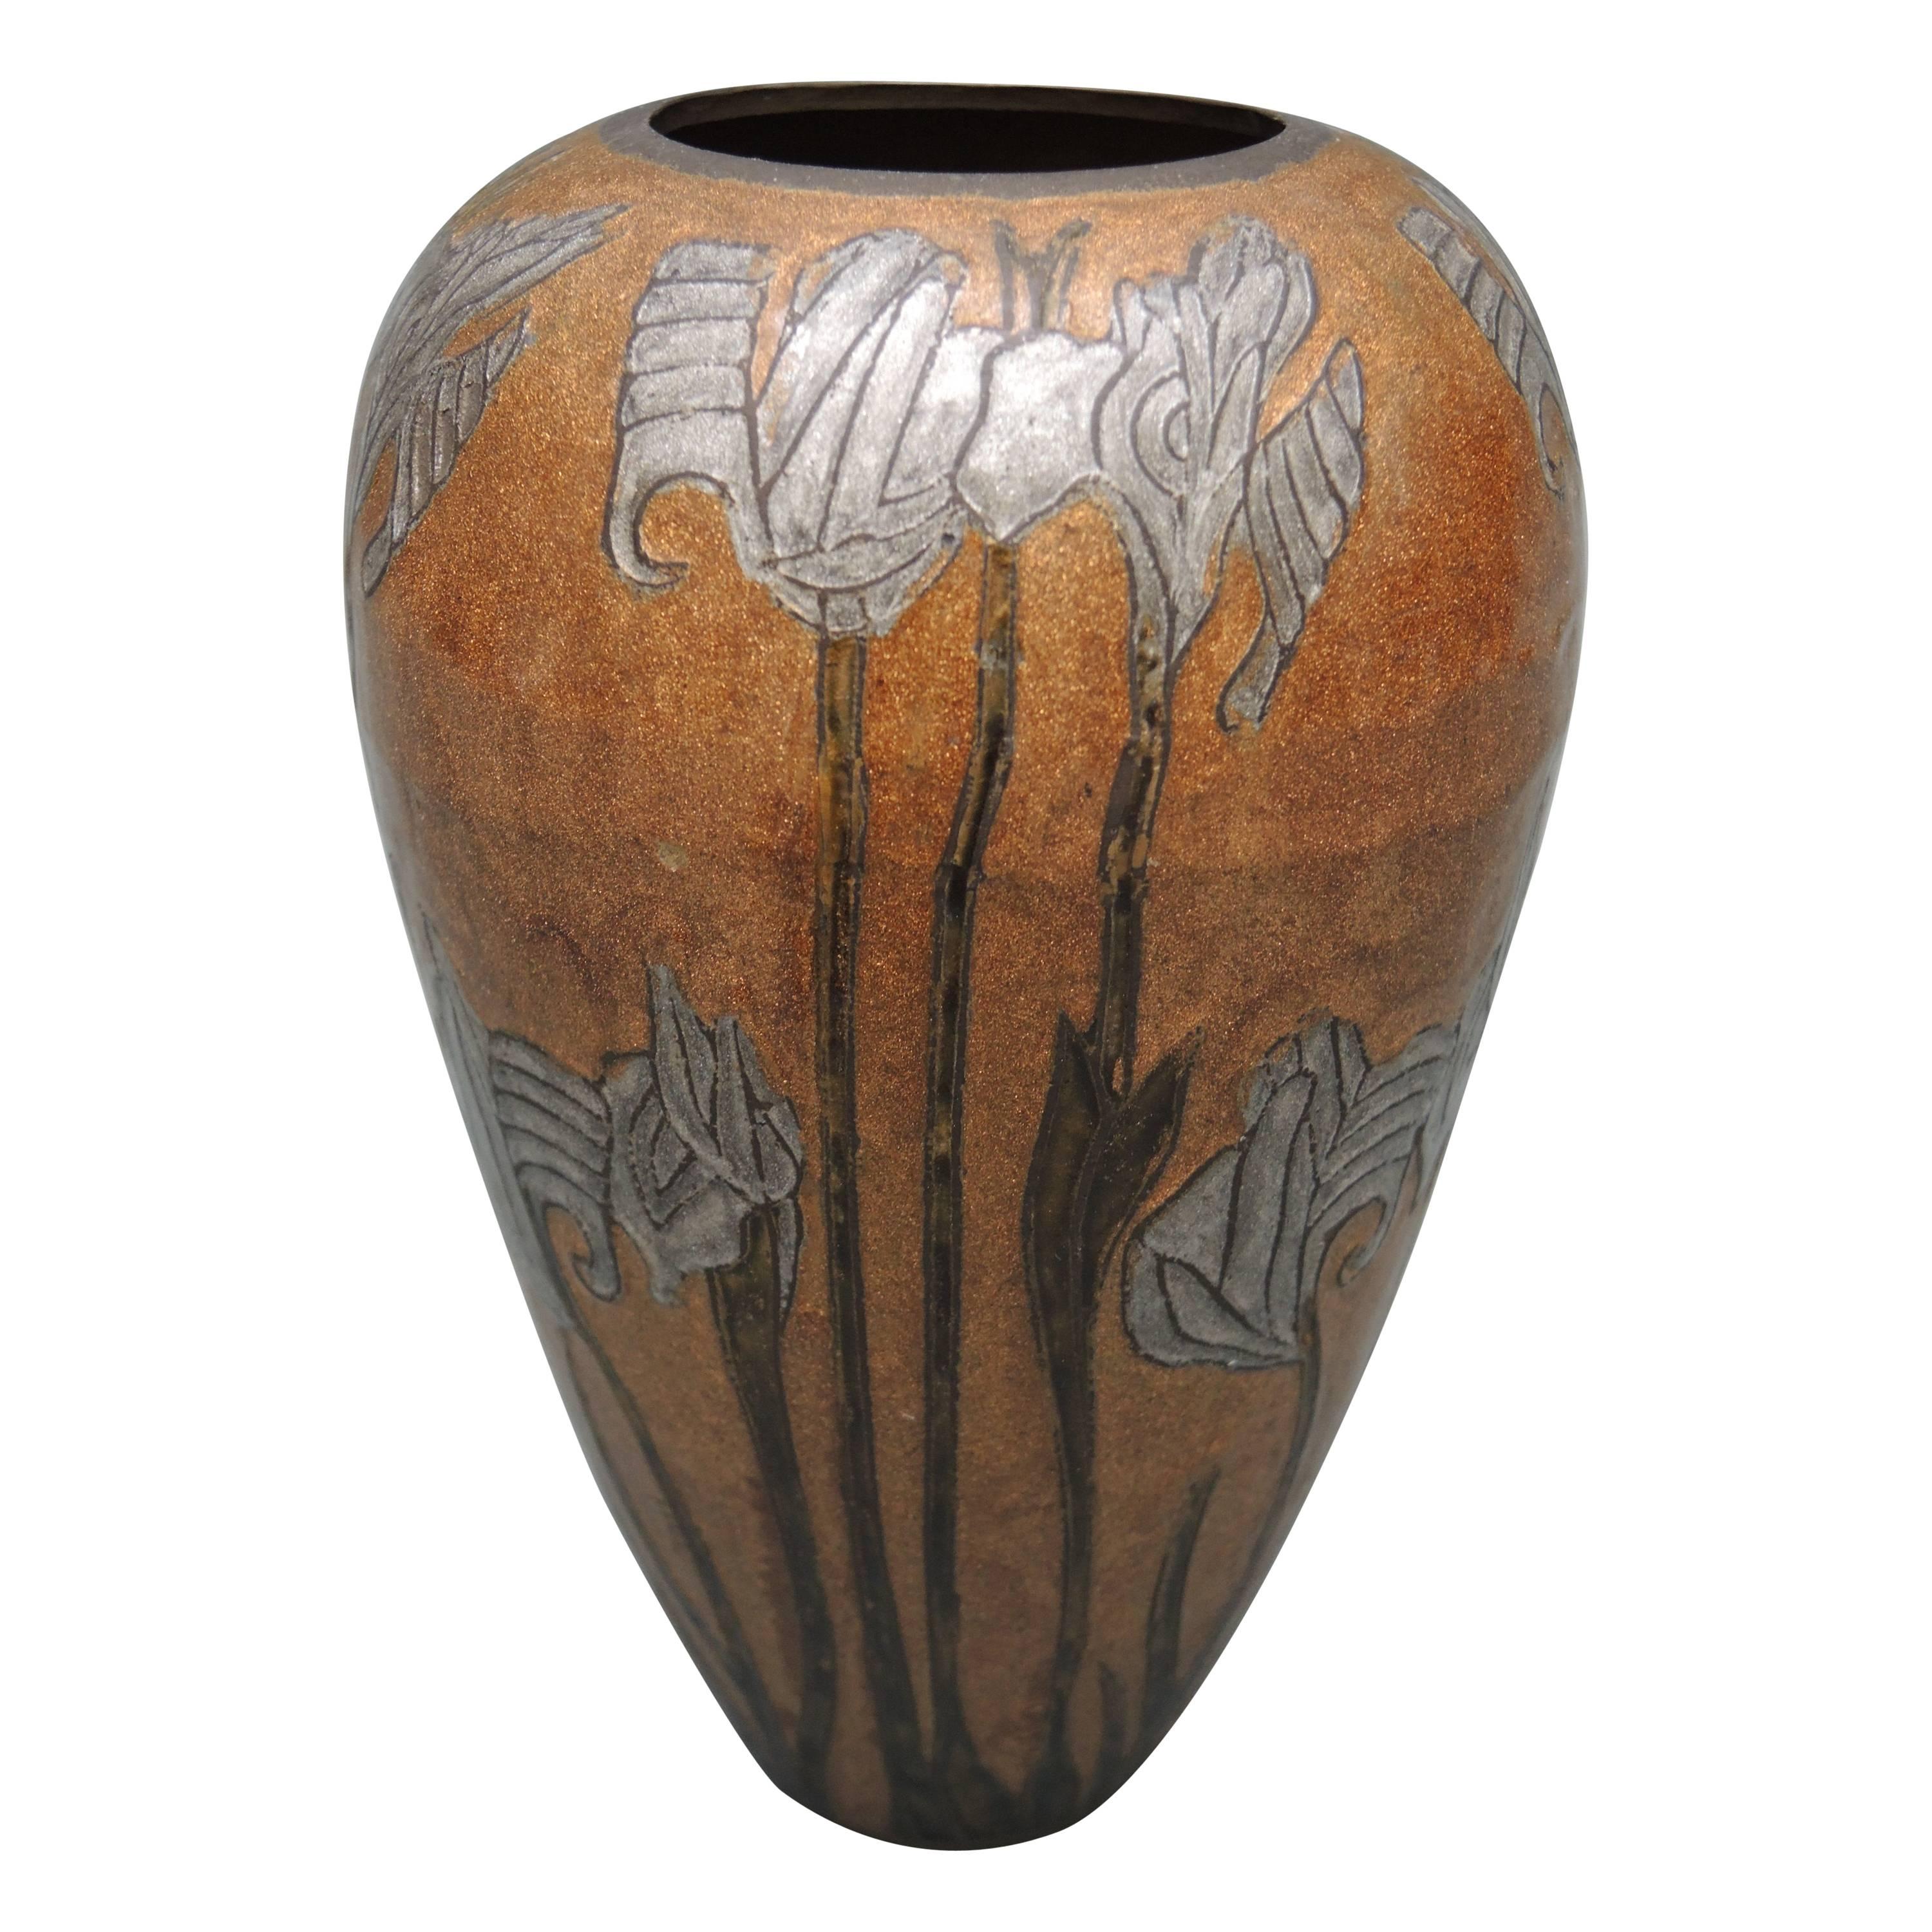 Dutch Art Nouveau Vase Cloisonne Enamel Design on Brass of Iris Blooms 